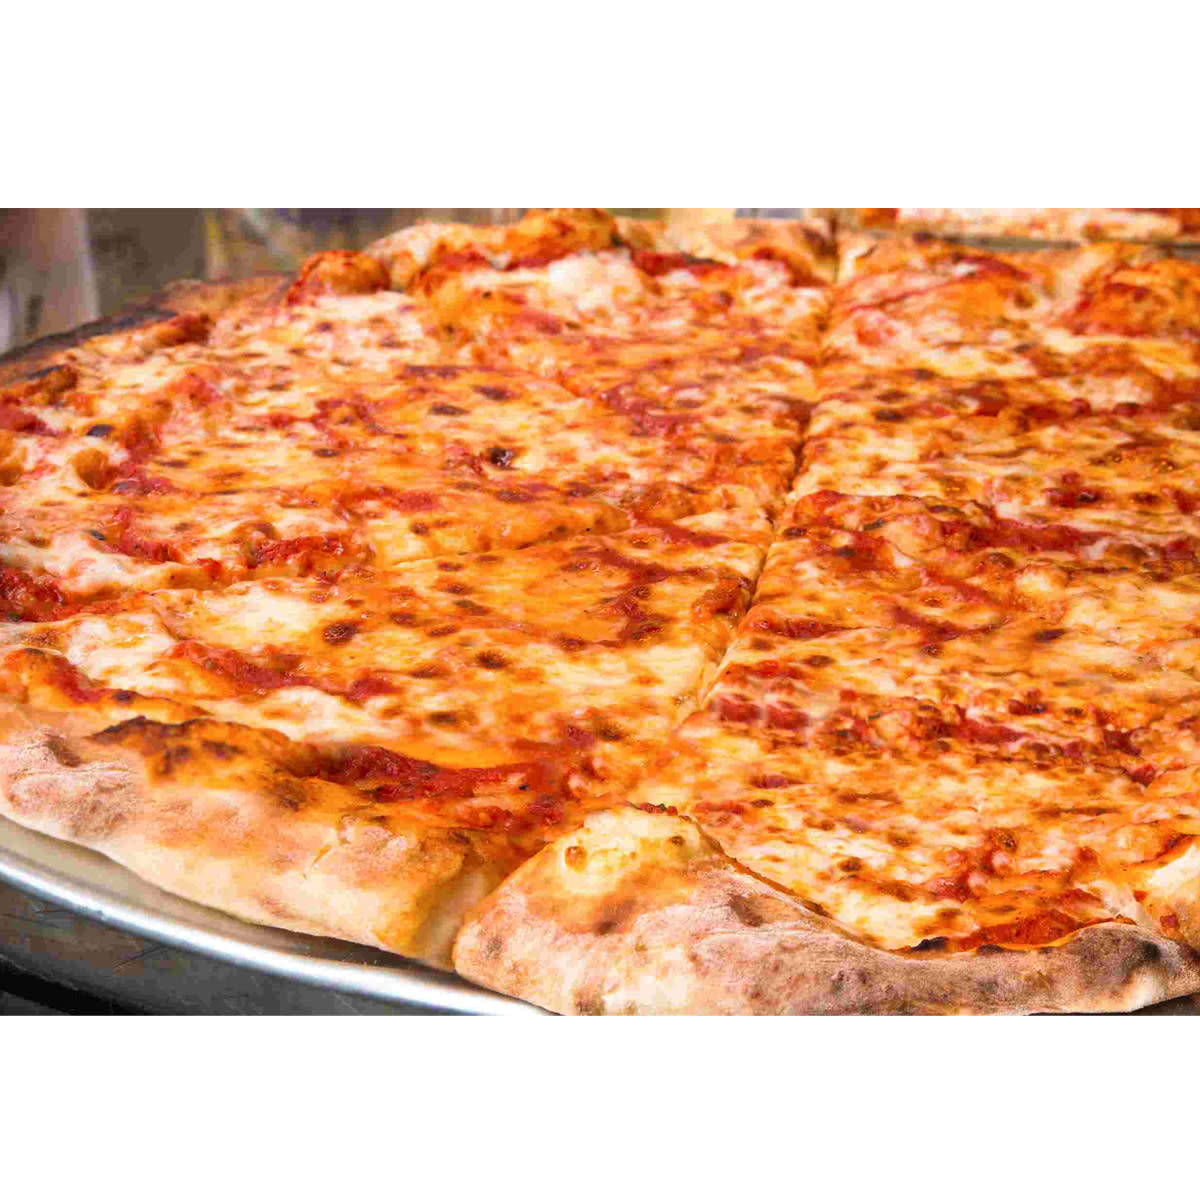 Robe Evolve vinden er stærk Aldo's New York Style Pizzeria